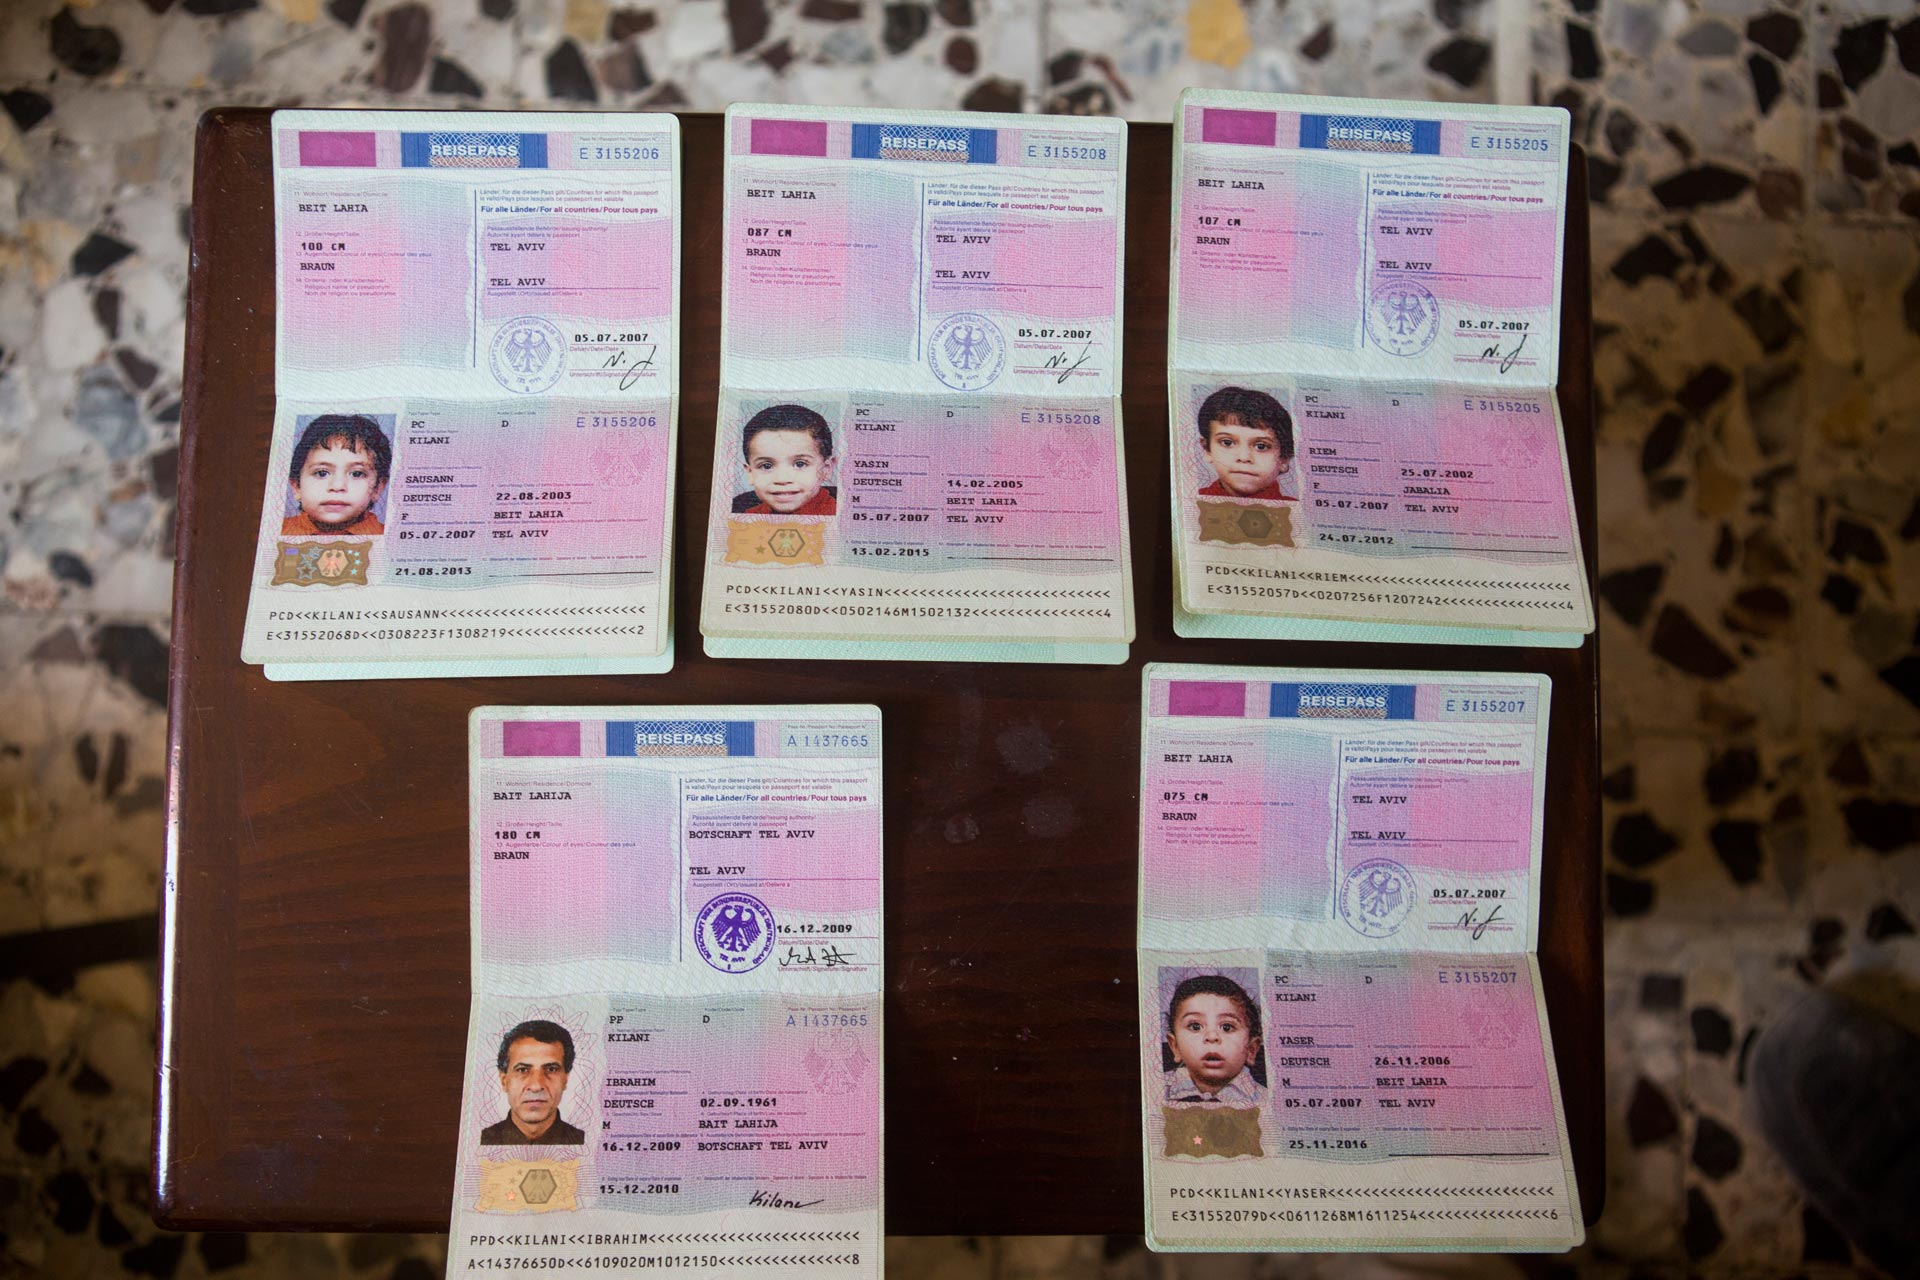 Ibrahim i wszystkie jego dzieci mieli niemieckie obywatelstwo. Na zdjęciu widać ich niemieckie paszporty, odnalezione w gruzach kilka dni po bombardowaniu.
